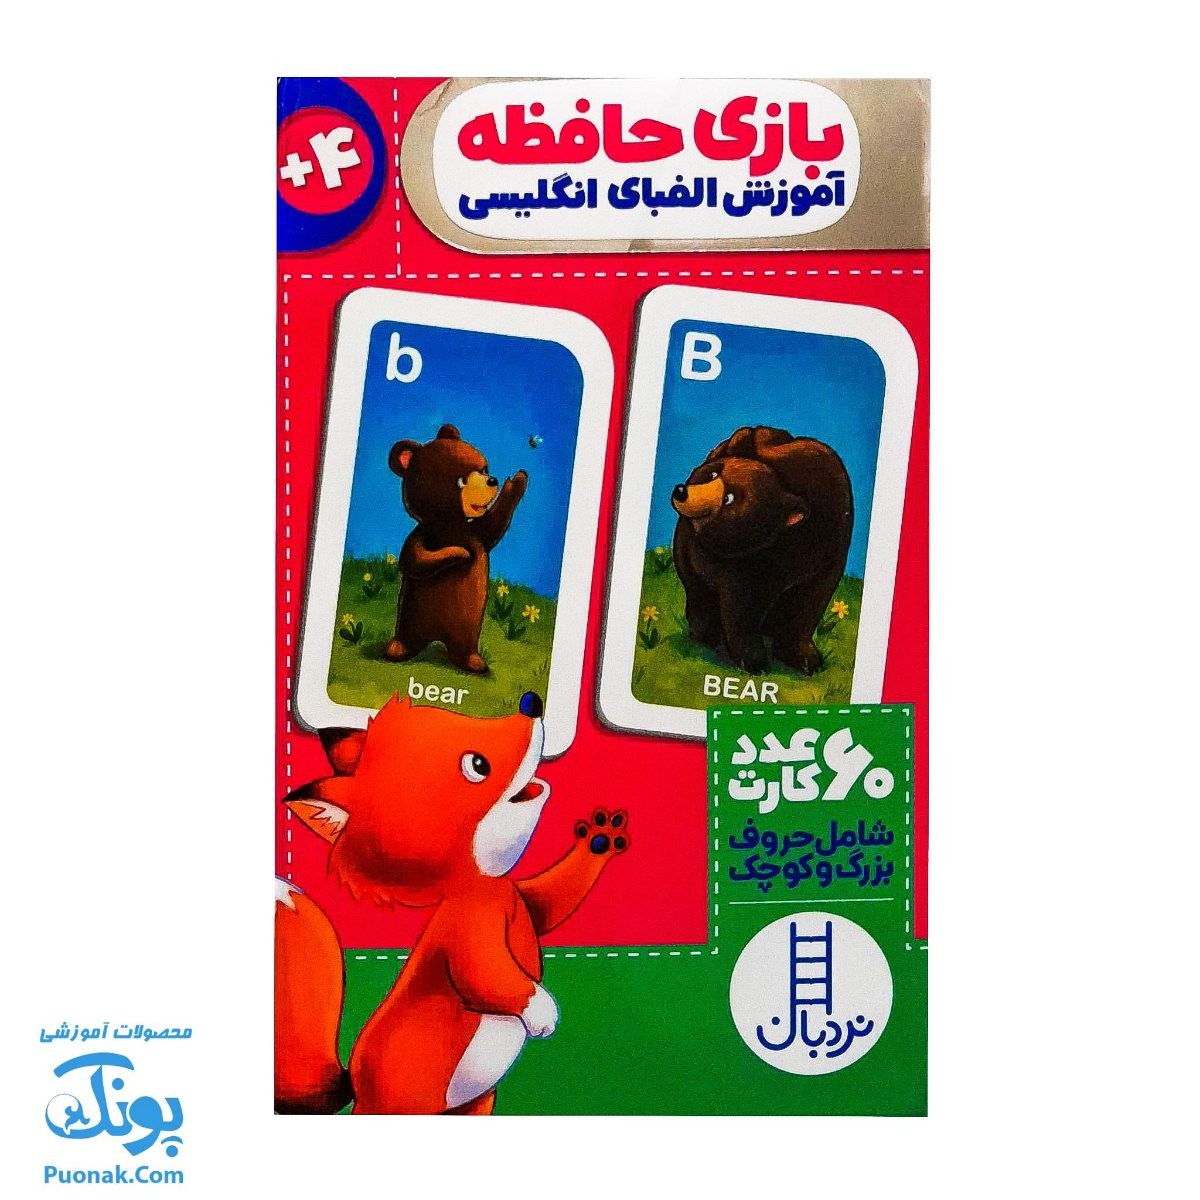 بازی فکری حافظه (۶۰ عدد کارت آموزش الفبای انگلیسی حروف کوچک و بزرگ) | نردبان